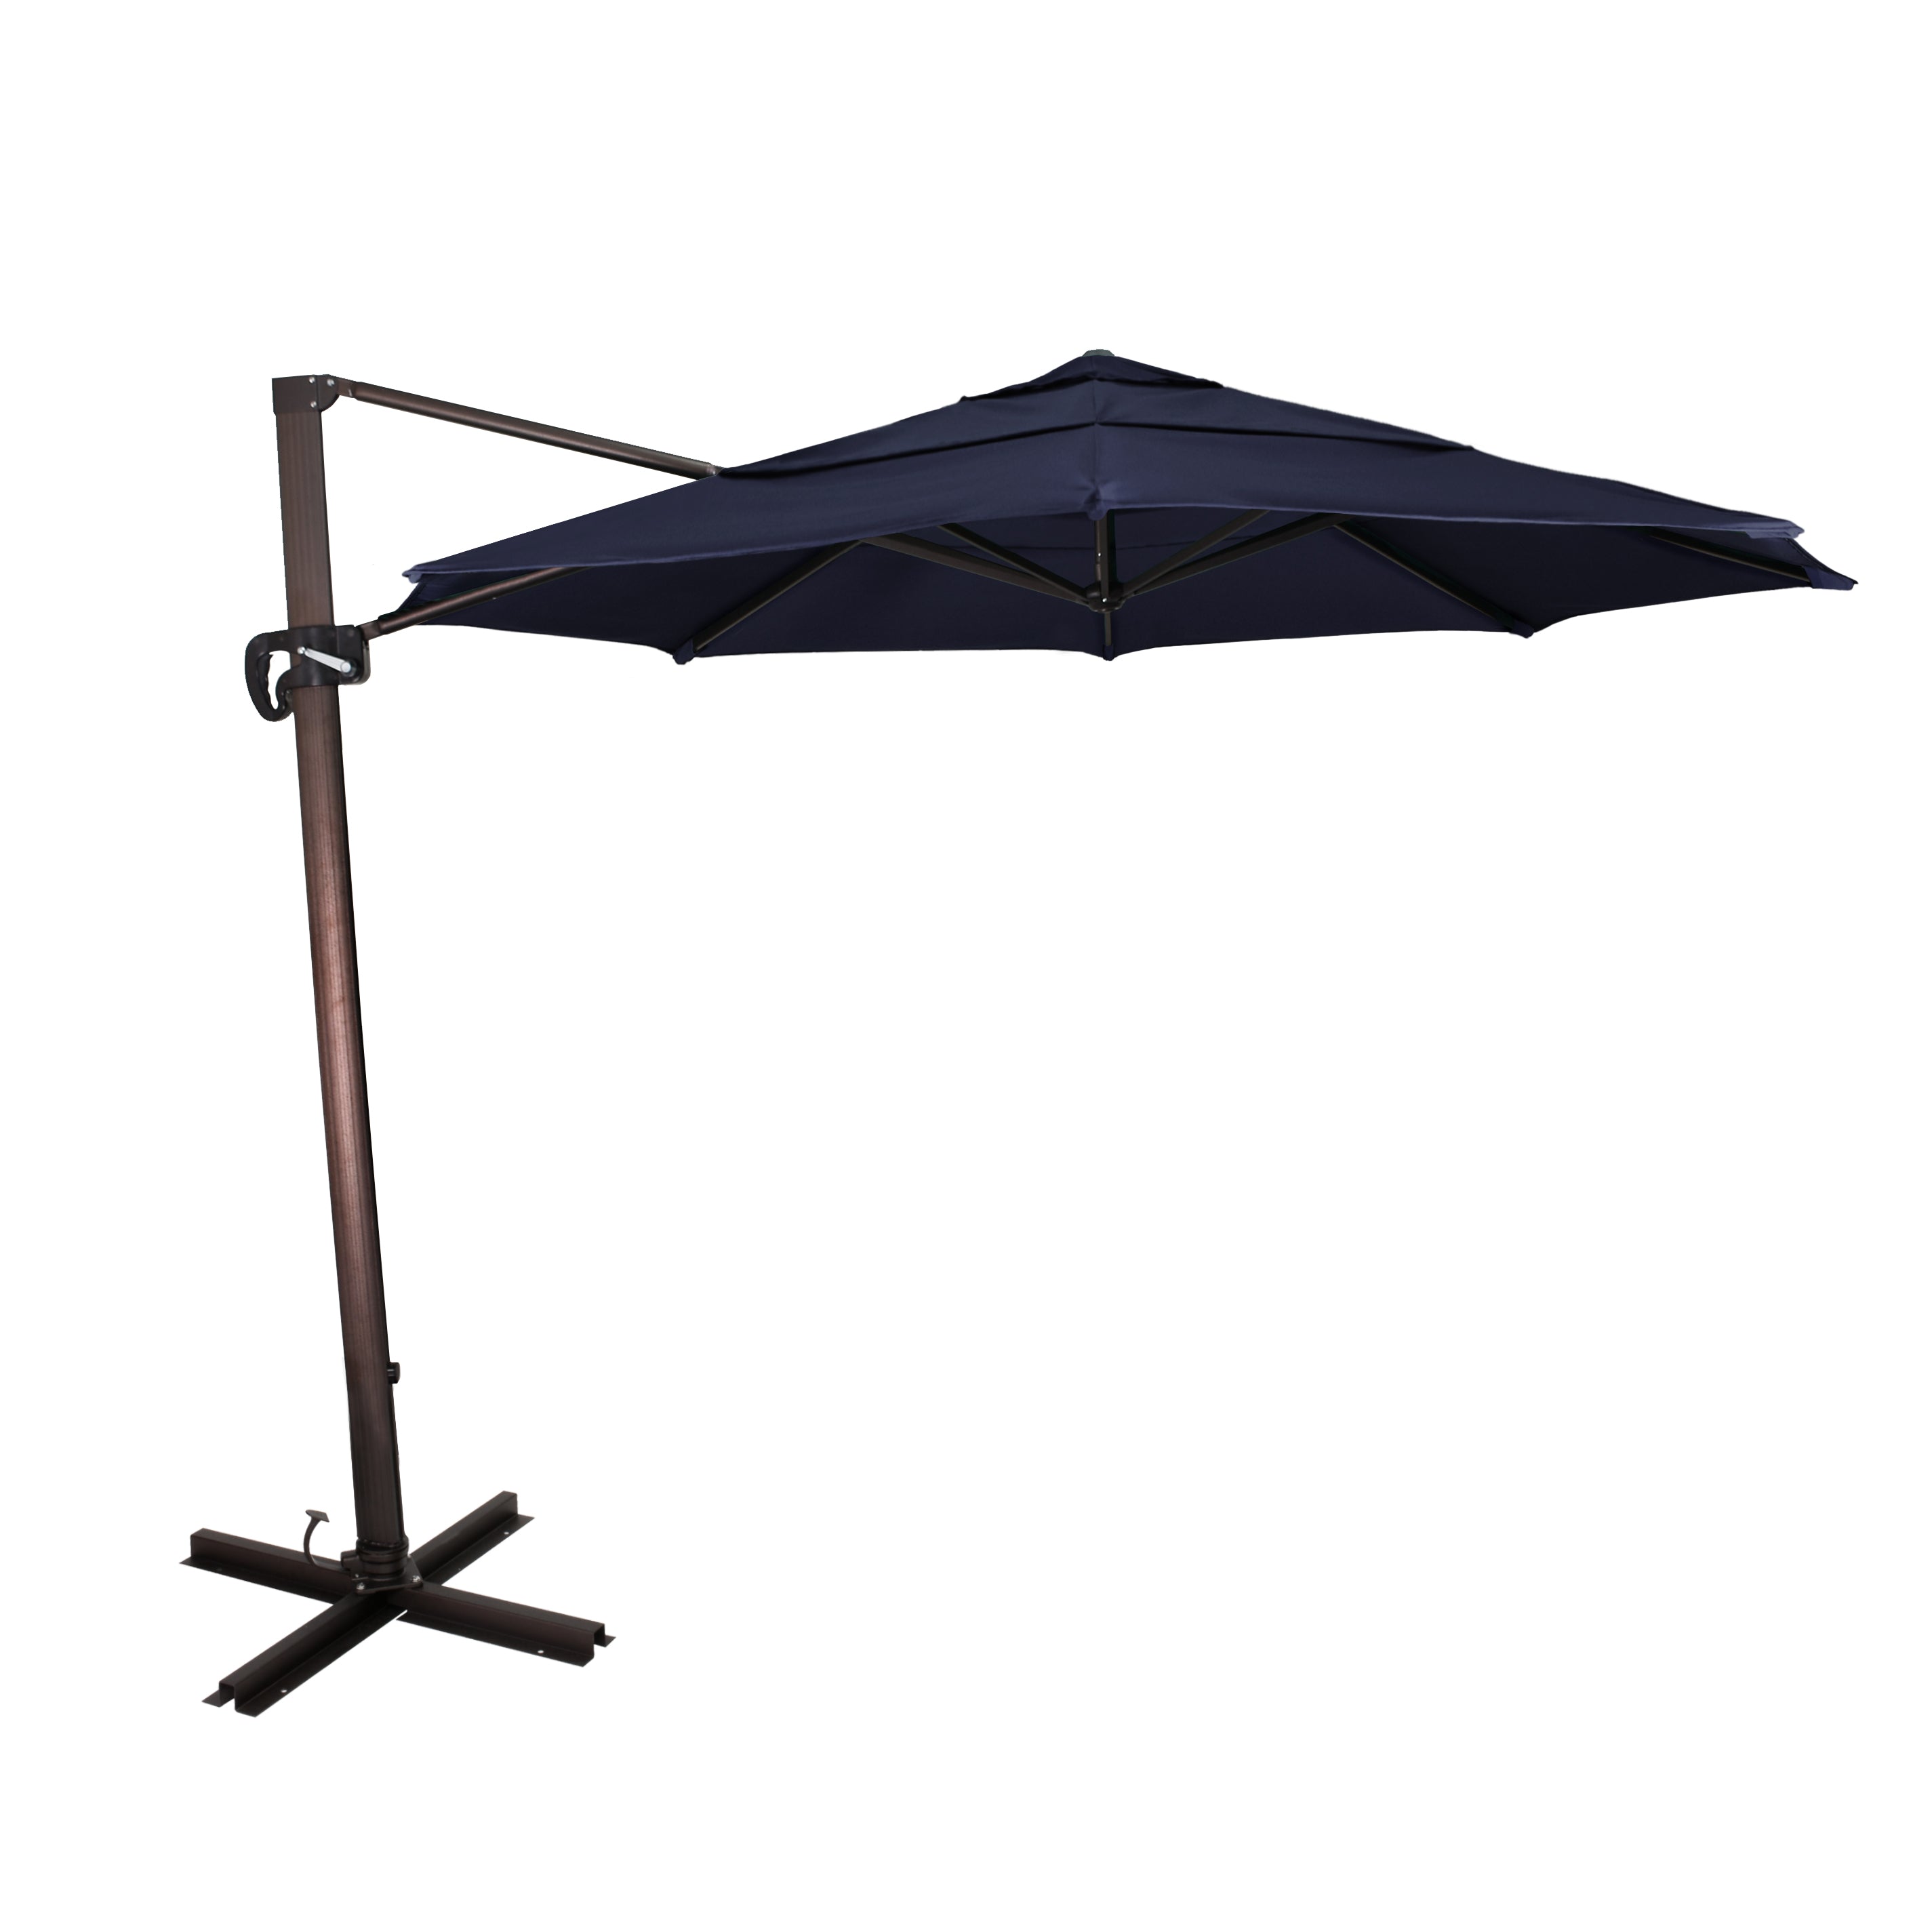 California Umbrella - 11' - Cantilever Umbrella - Aluminum Pole - Navy - Sunbrella  - CALI118A117-5439-DWV